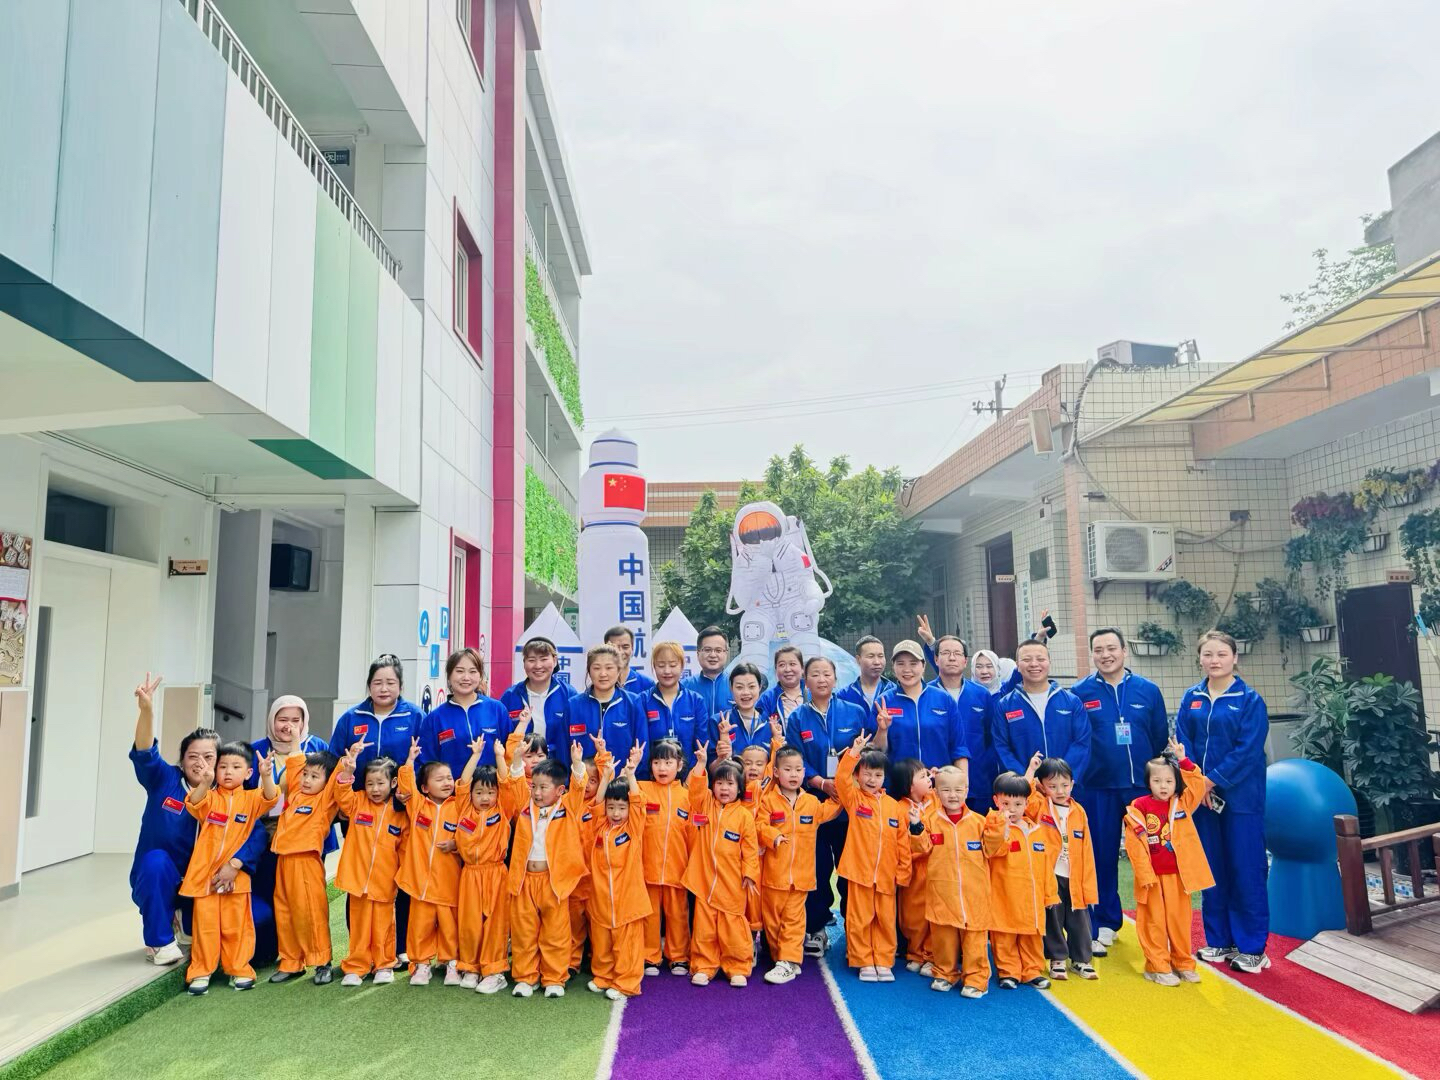 莲湖区新建幼儿园开展“我的航天梦”亲子运动会